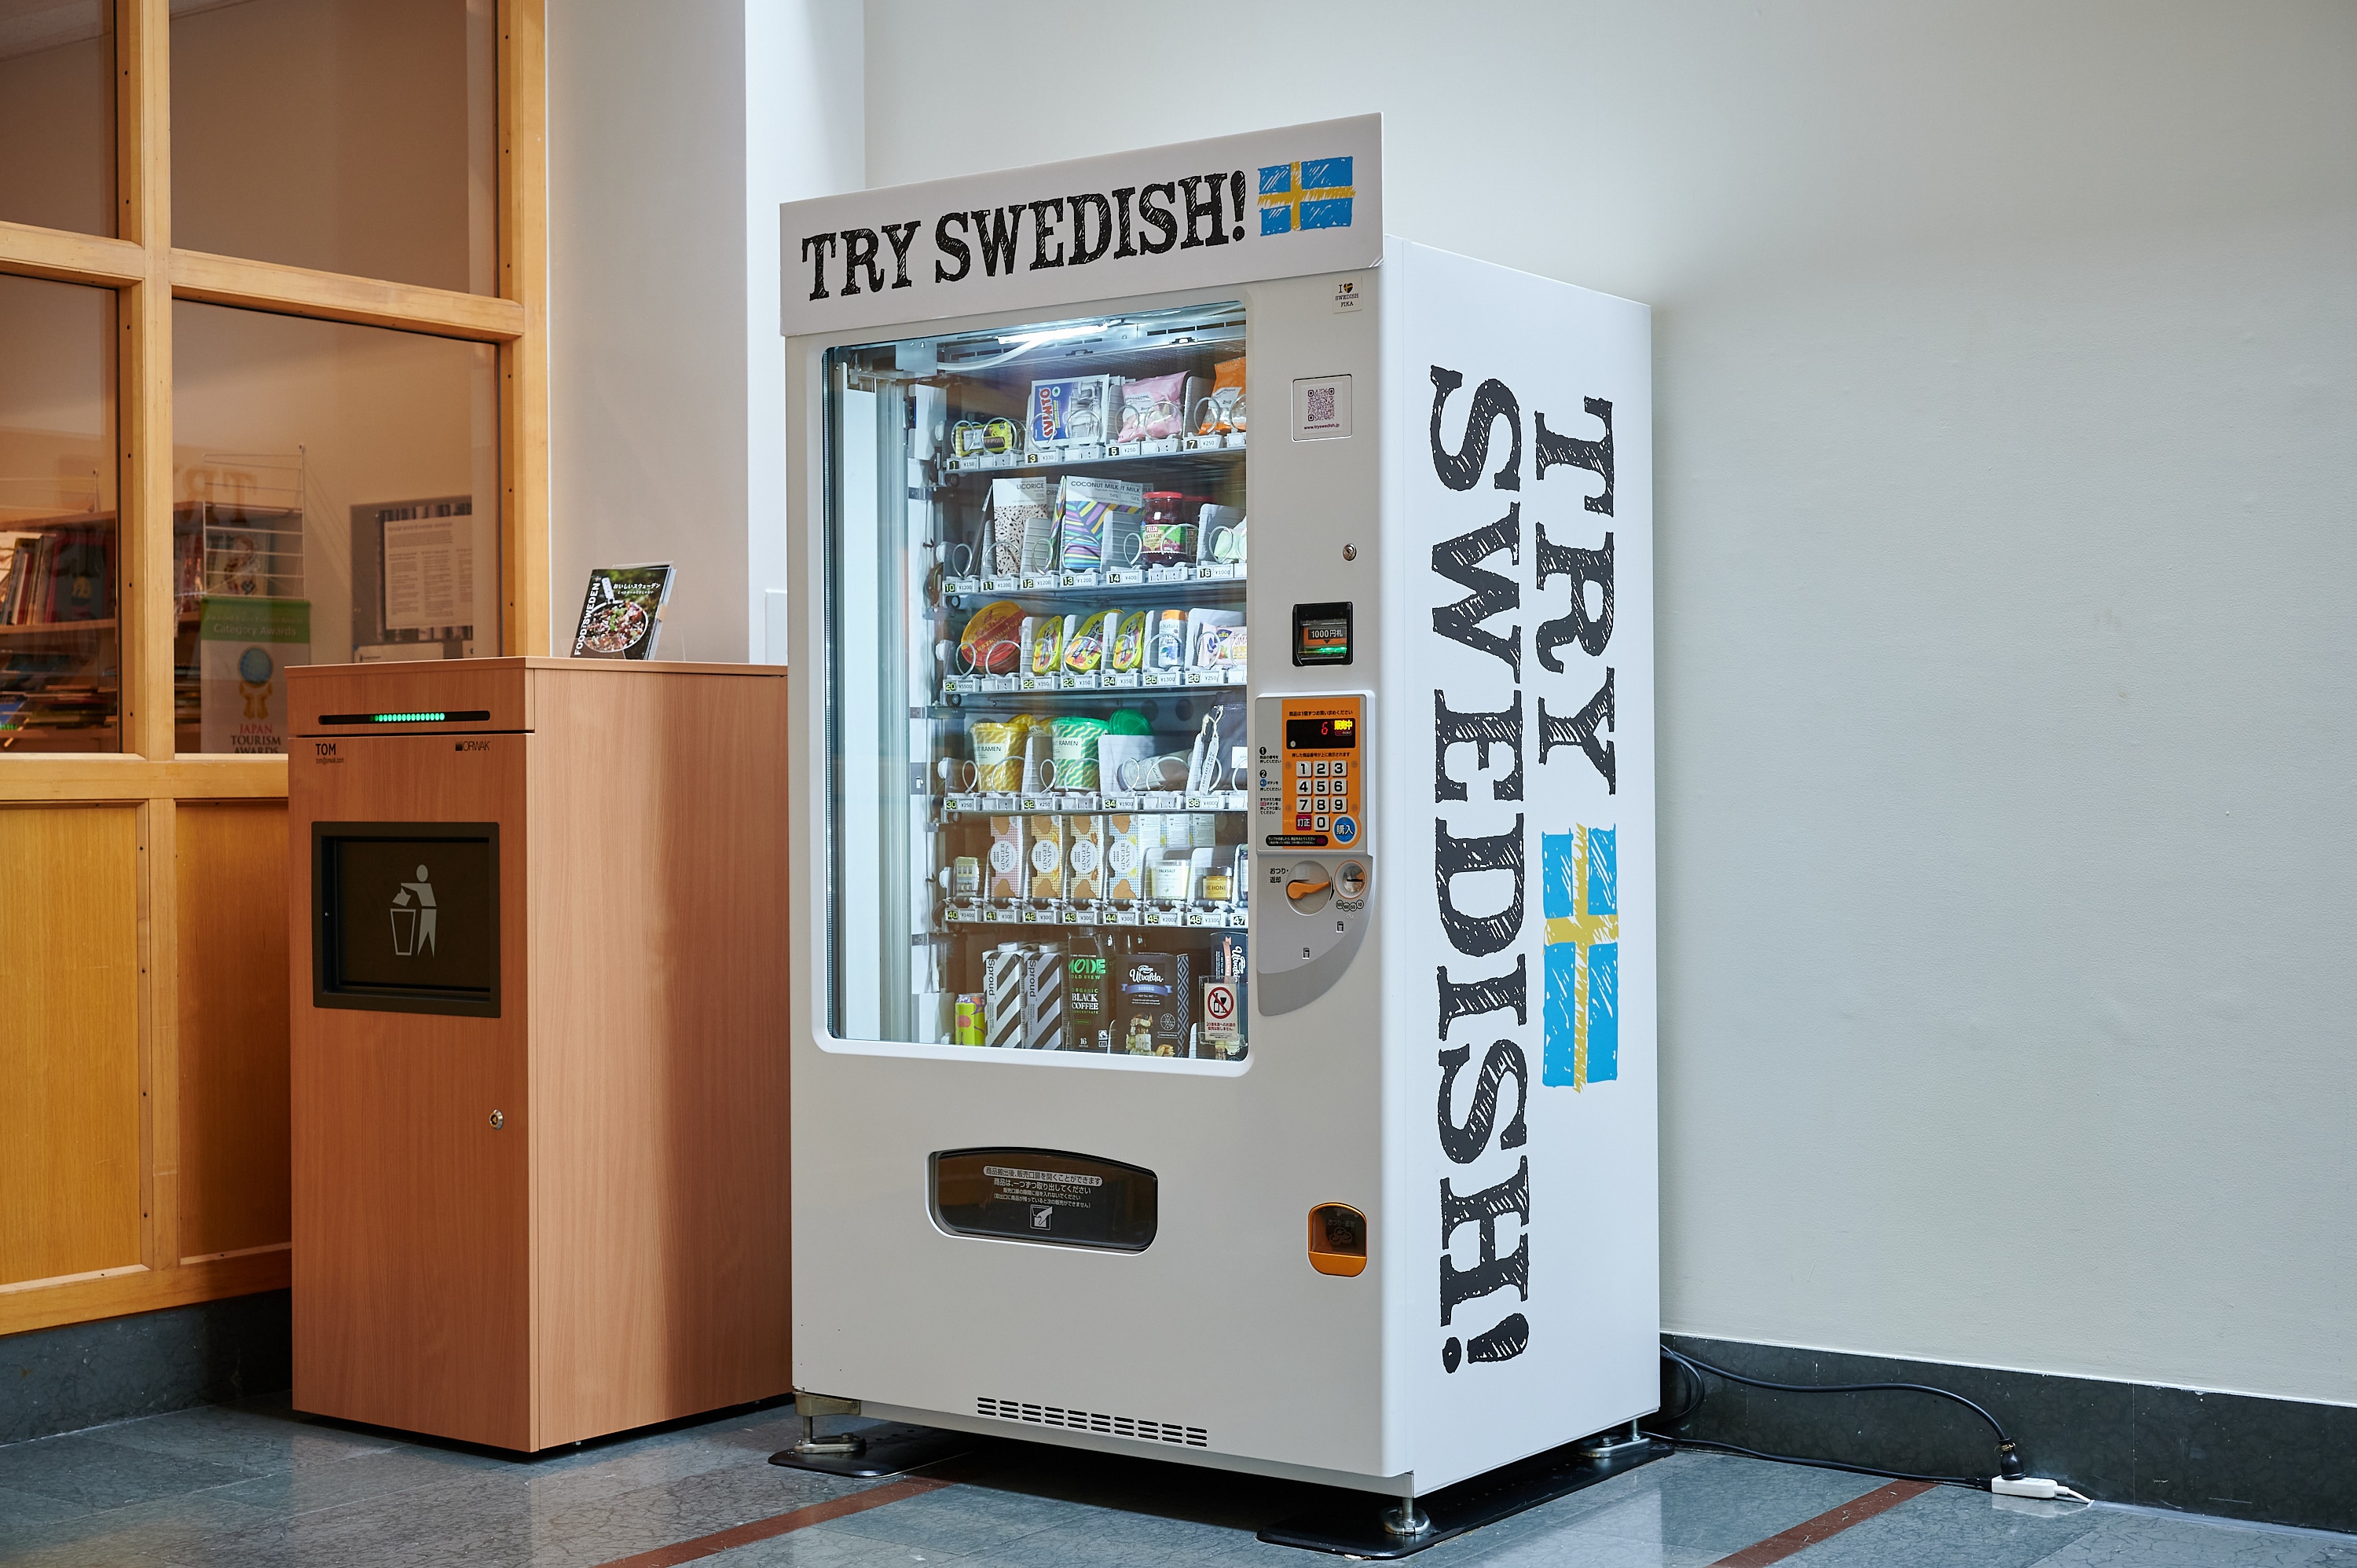 スウェーデン大使館の入り口を抜けてすぐの場所に置かれている「TRY SWEDISH！」の自動販売機　©平松市聖／文藝春秋